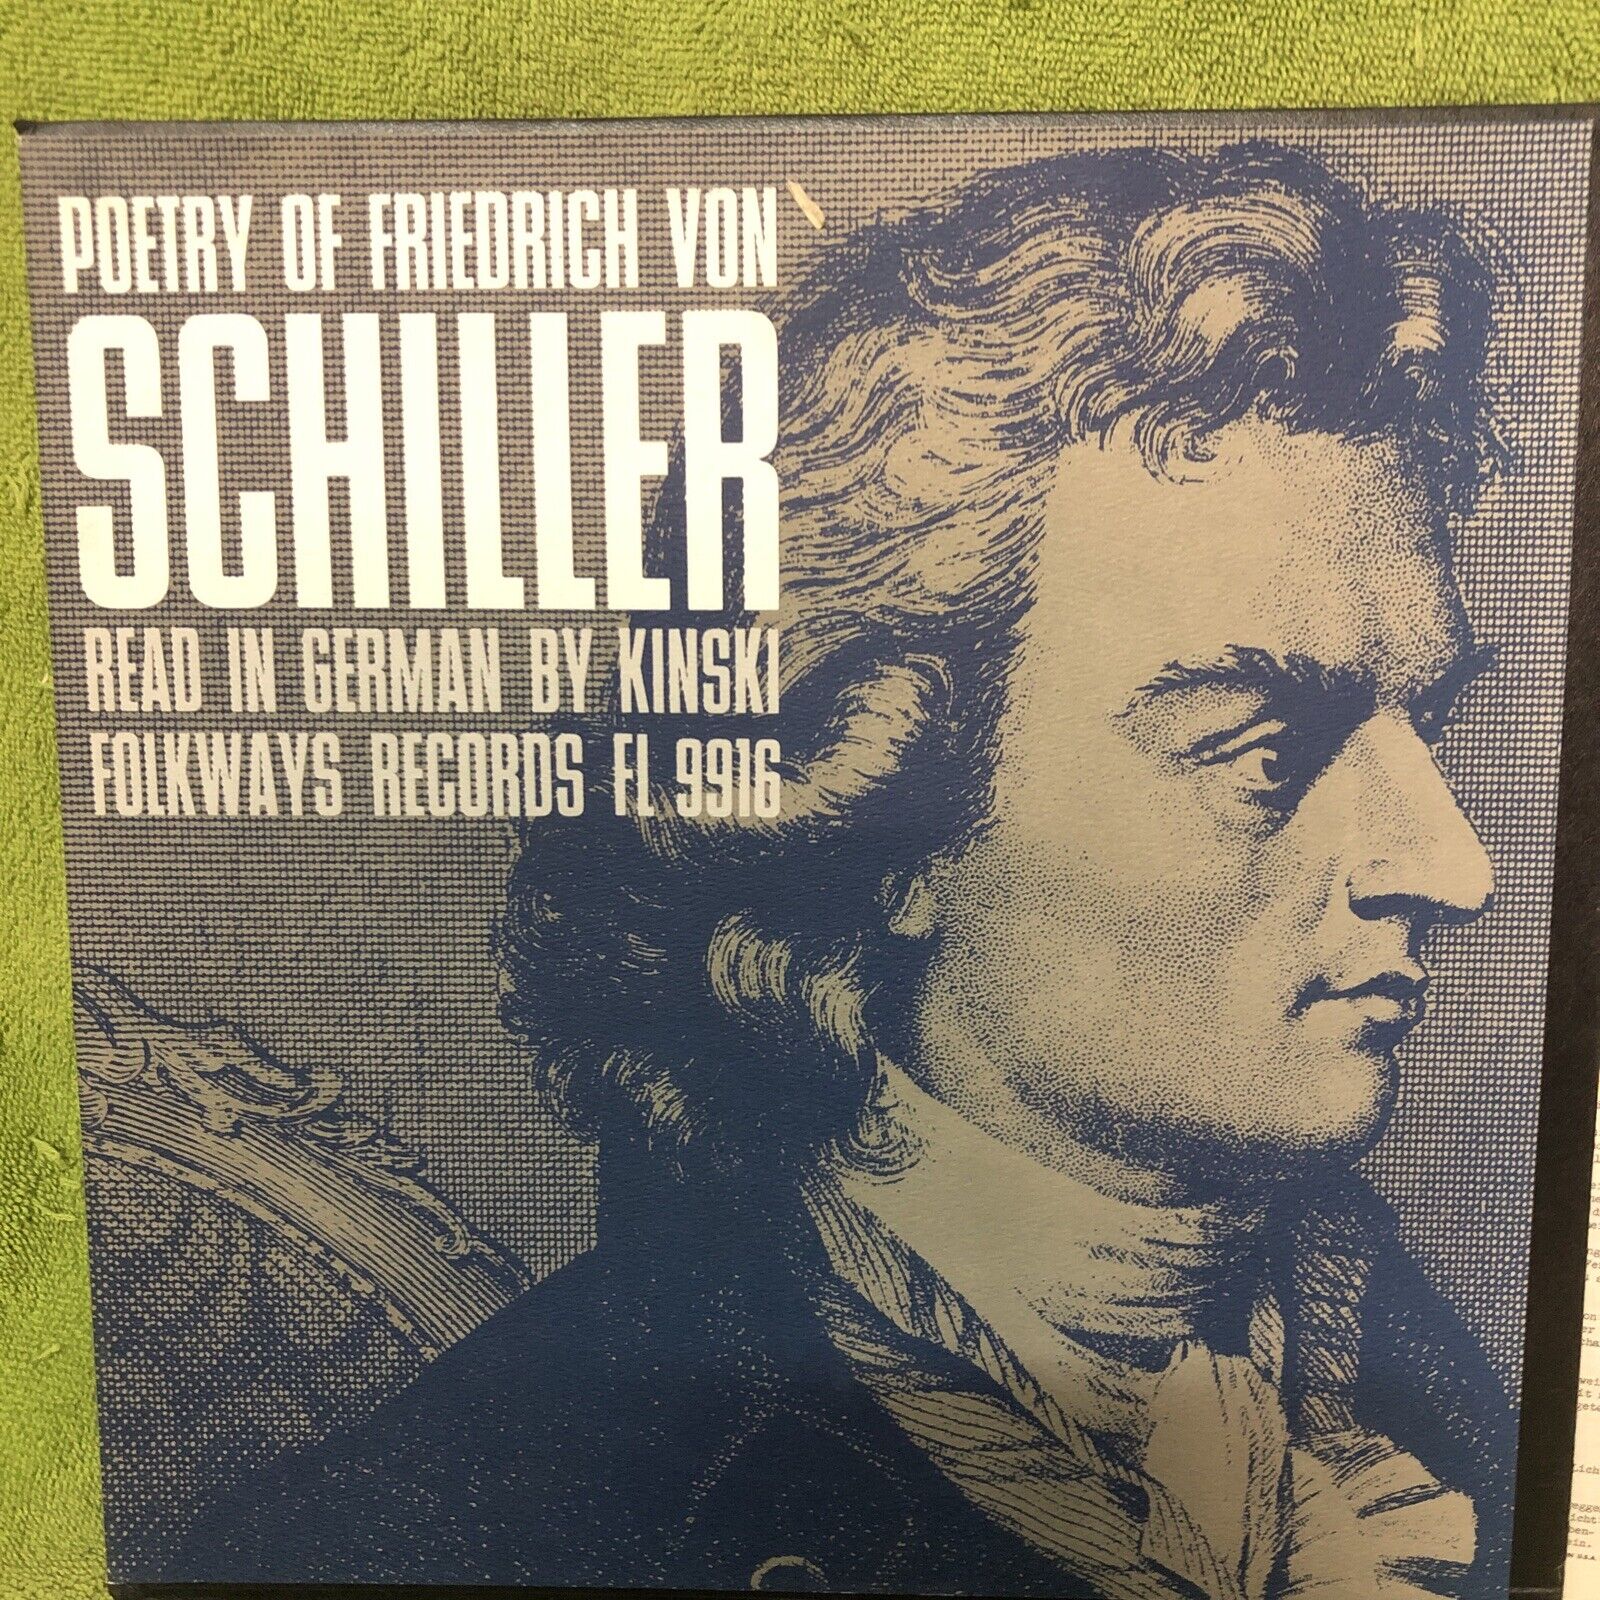 KINSKI – Poetry Of Friedrich Von Schiller - VINYL RECORD LP